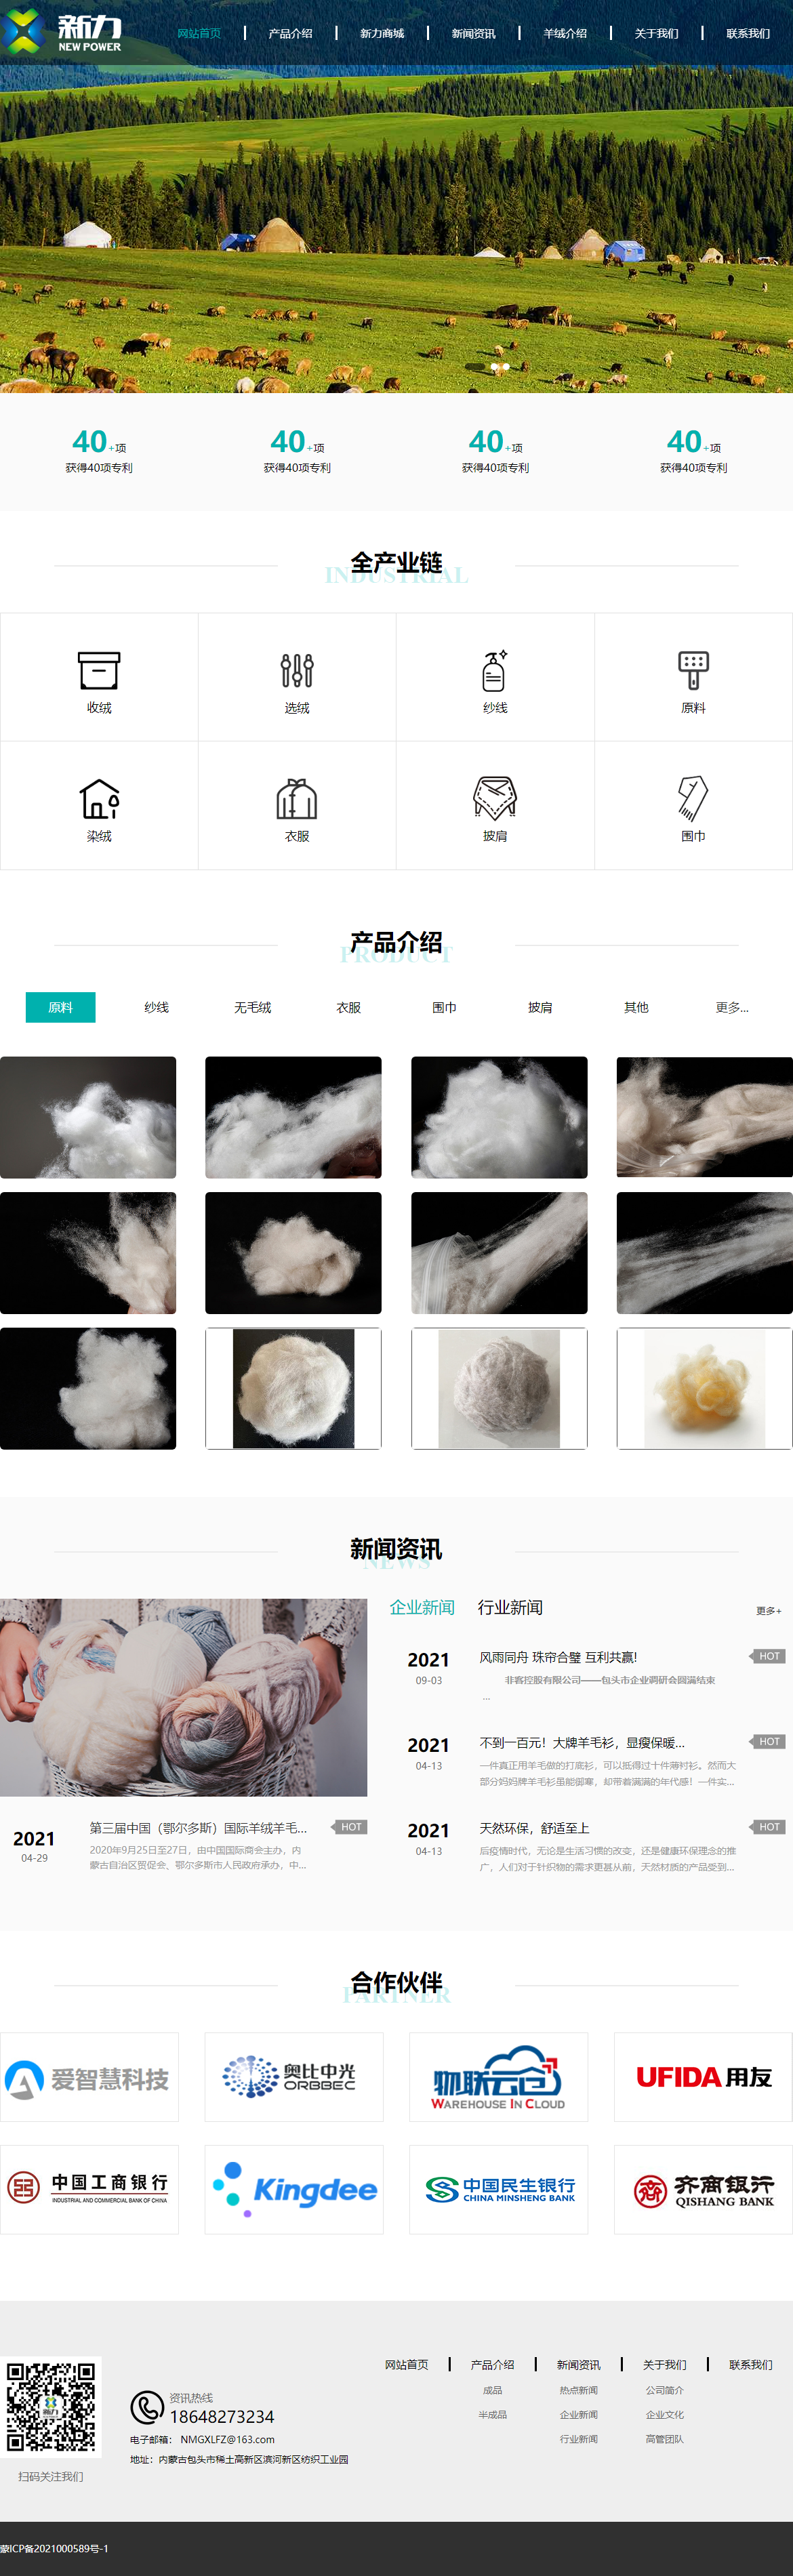 内蒙古新力纺织科技股份有限公司网站案例